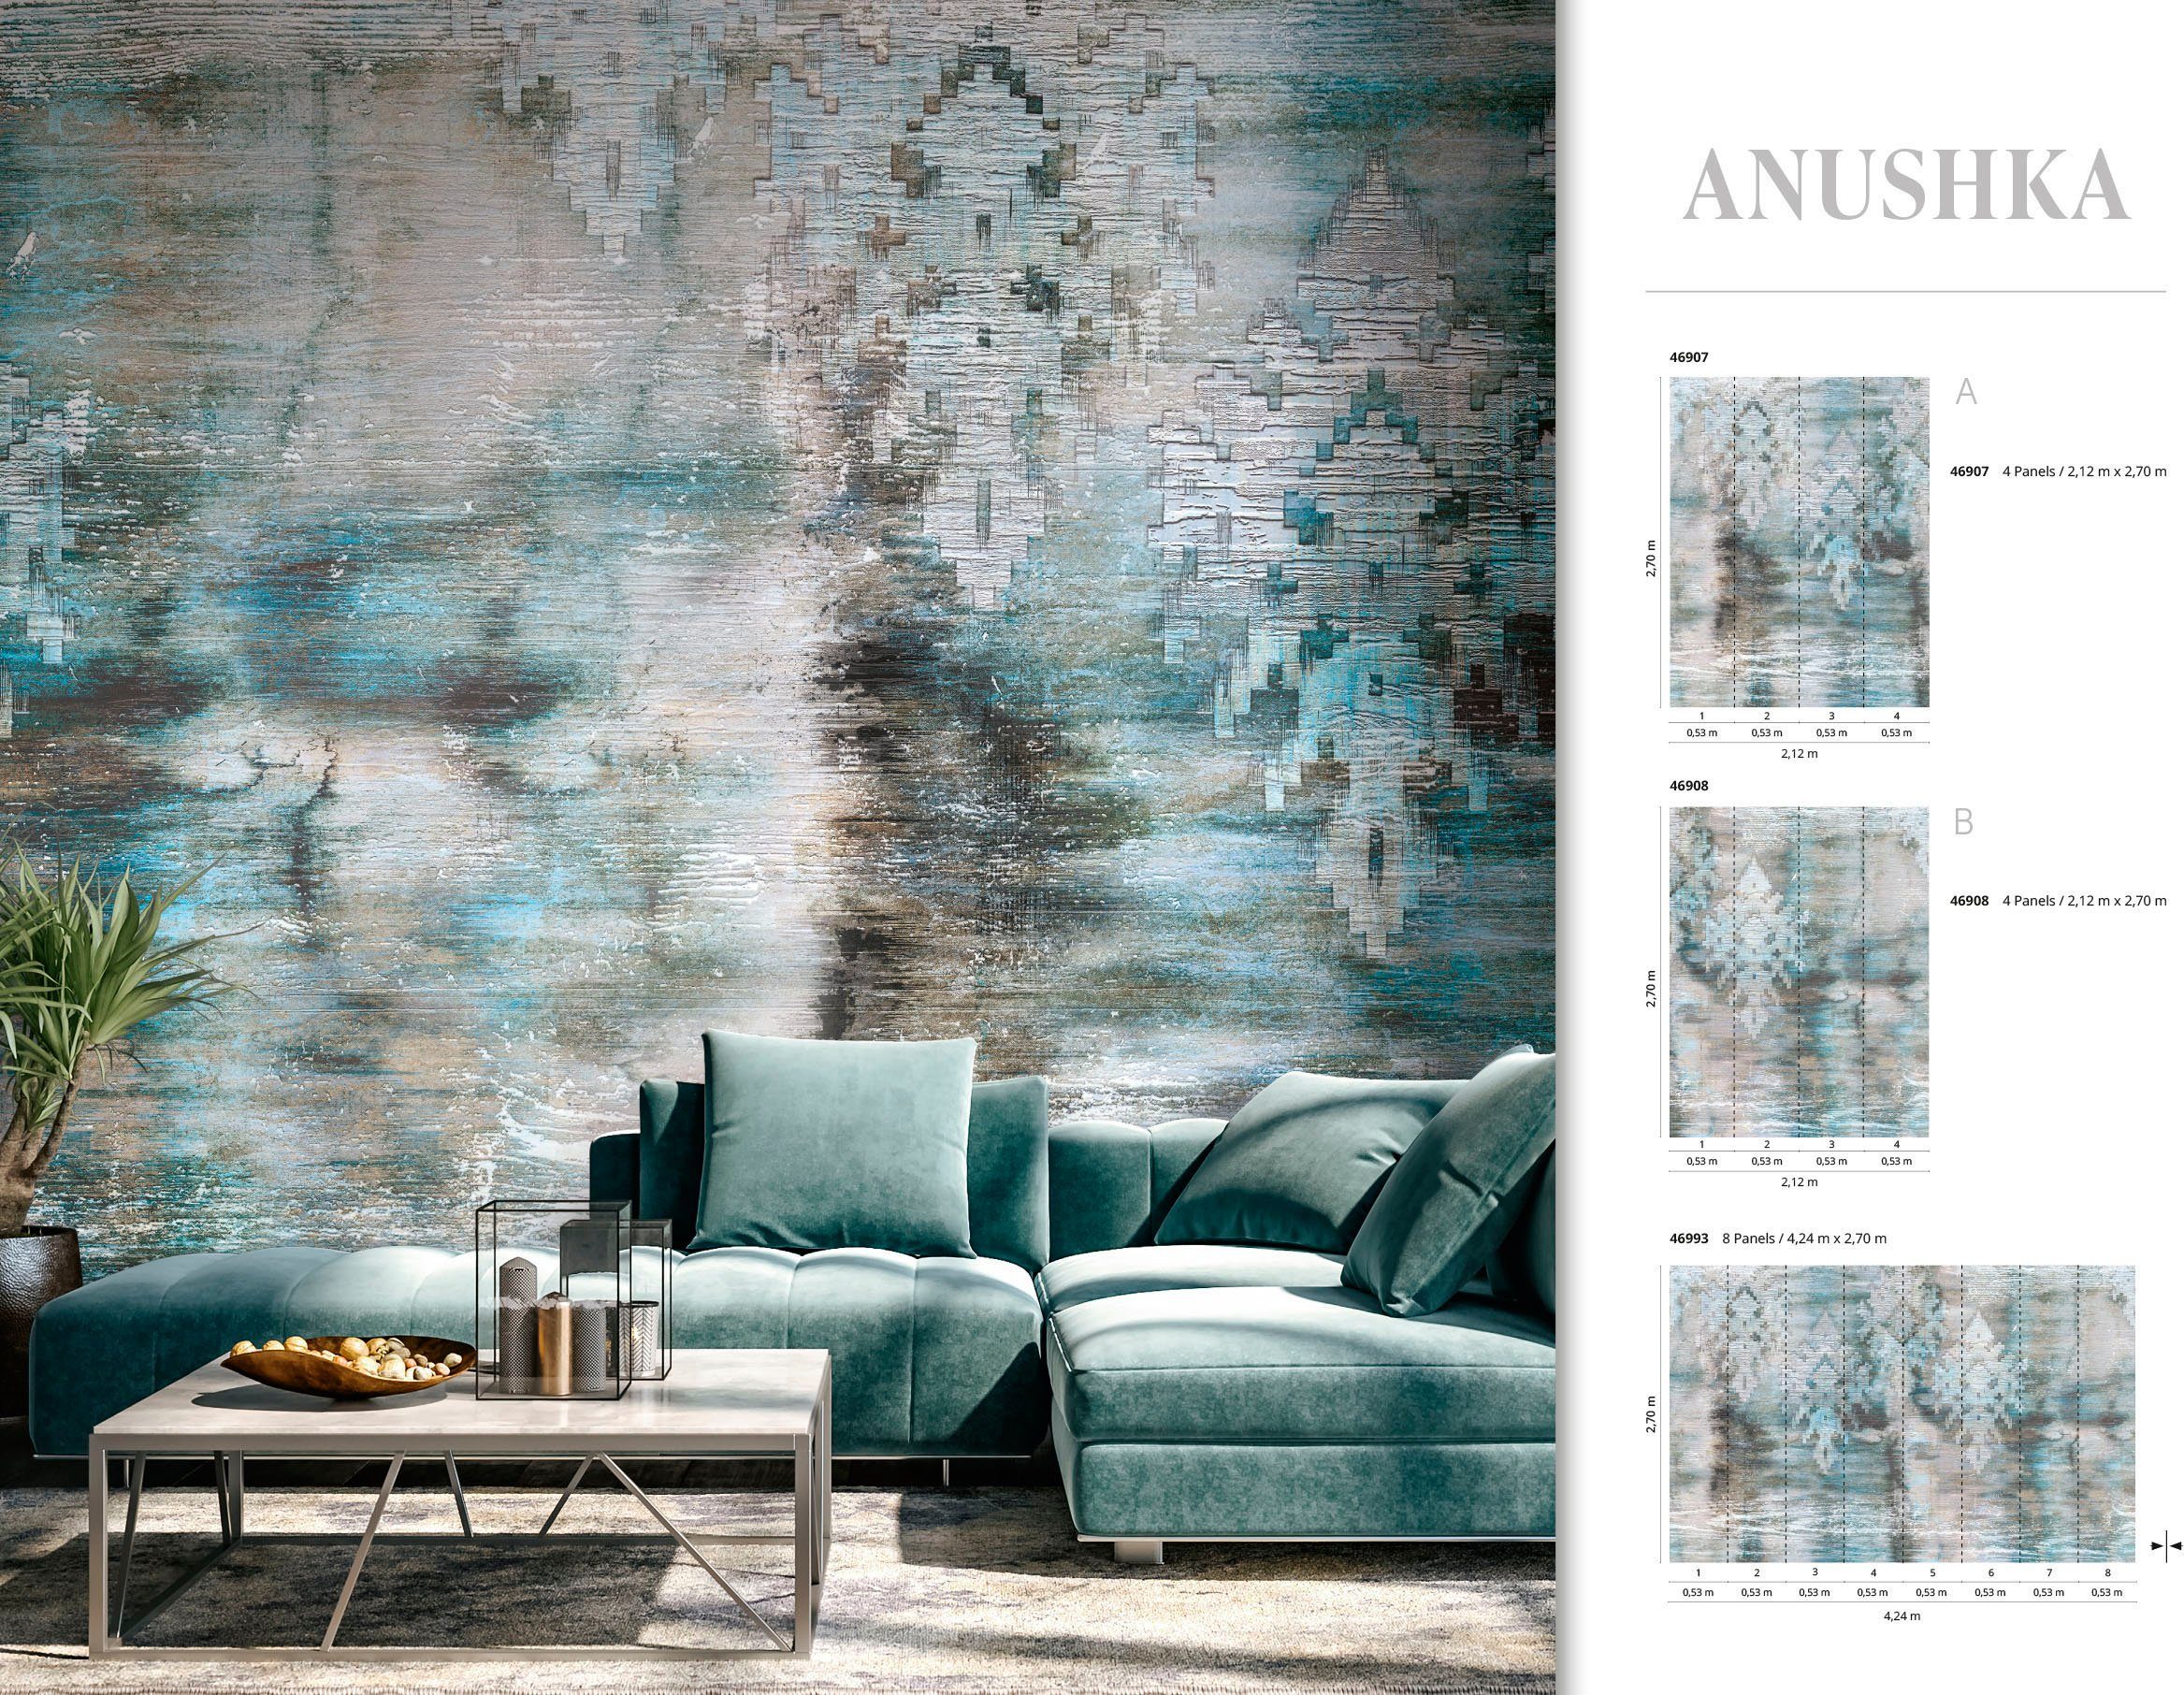 Vliestapete matt, Anushka, für grau-blau moderne Küche Fototapete Wohnzimmer Marburg glatt, Schlafzimmer